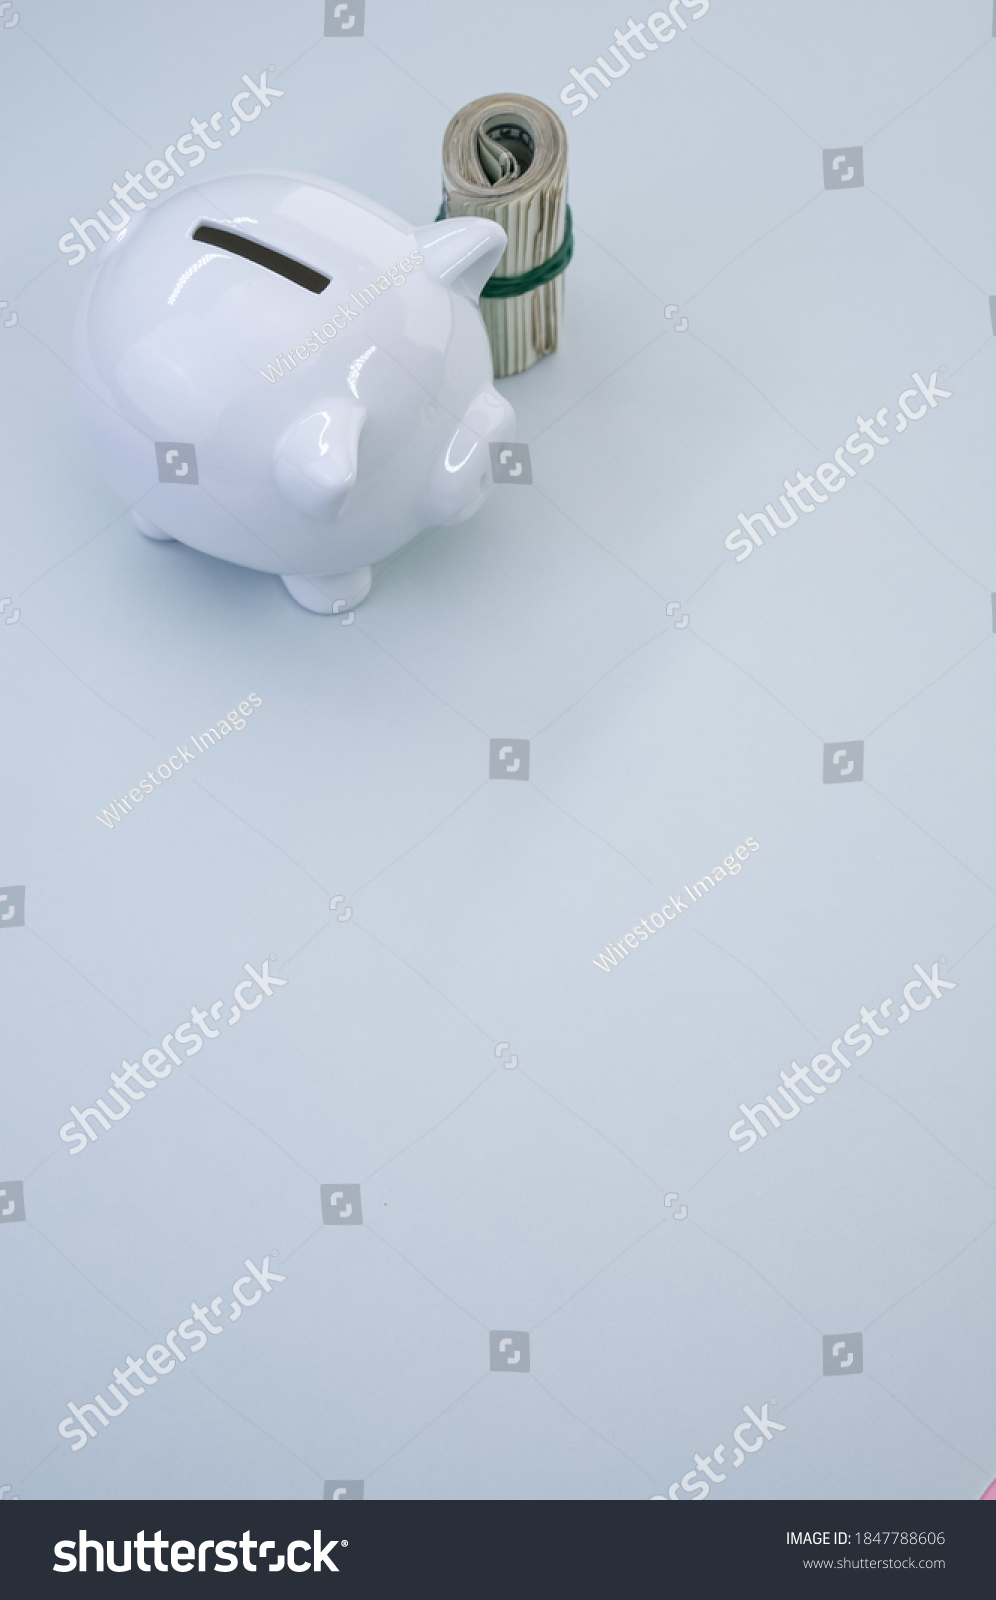 A vertical shot of dollar bills and a piggy bank on a blue surface #1847788606